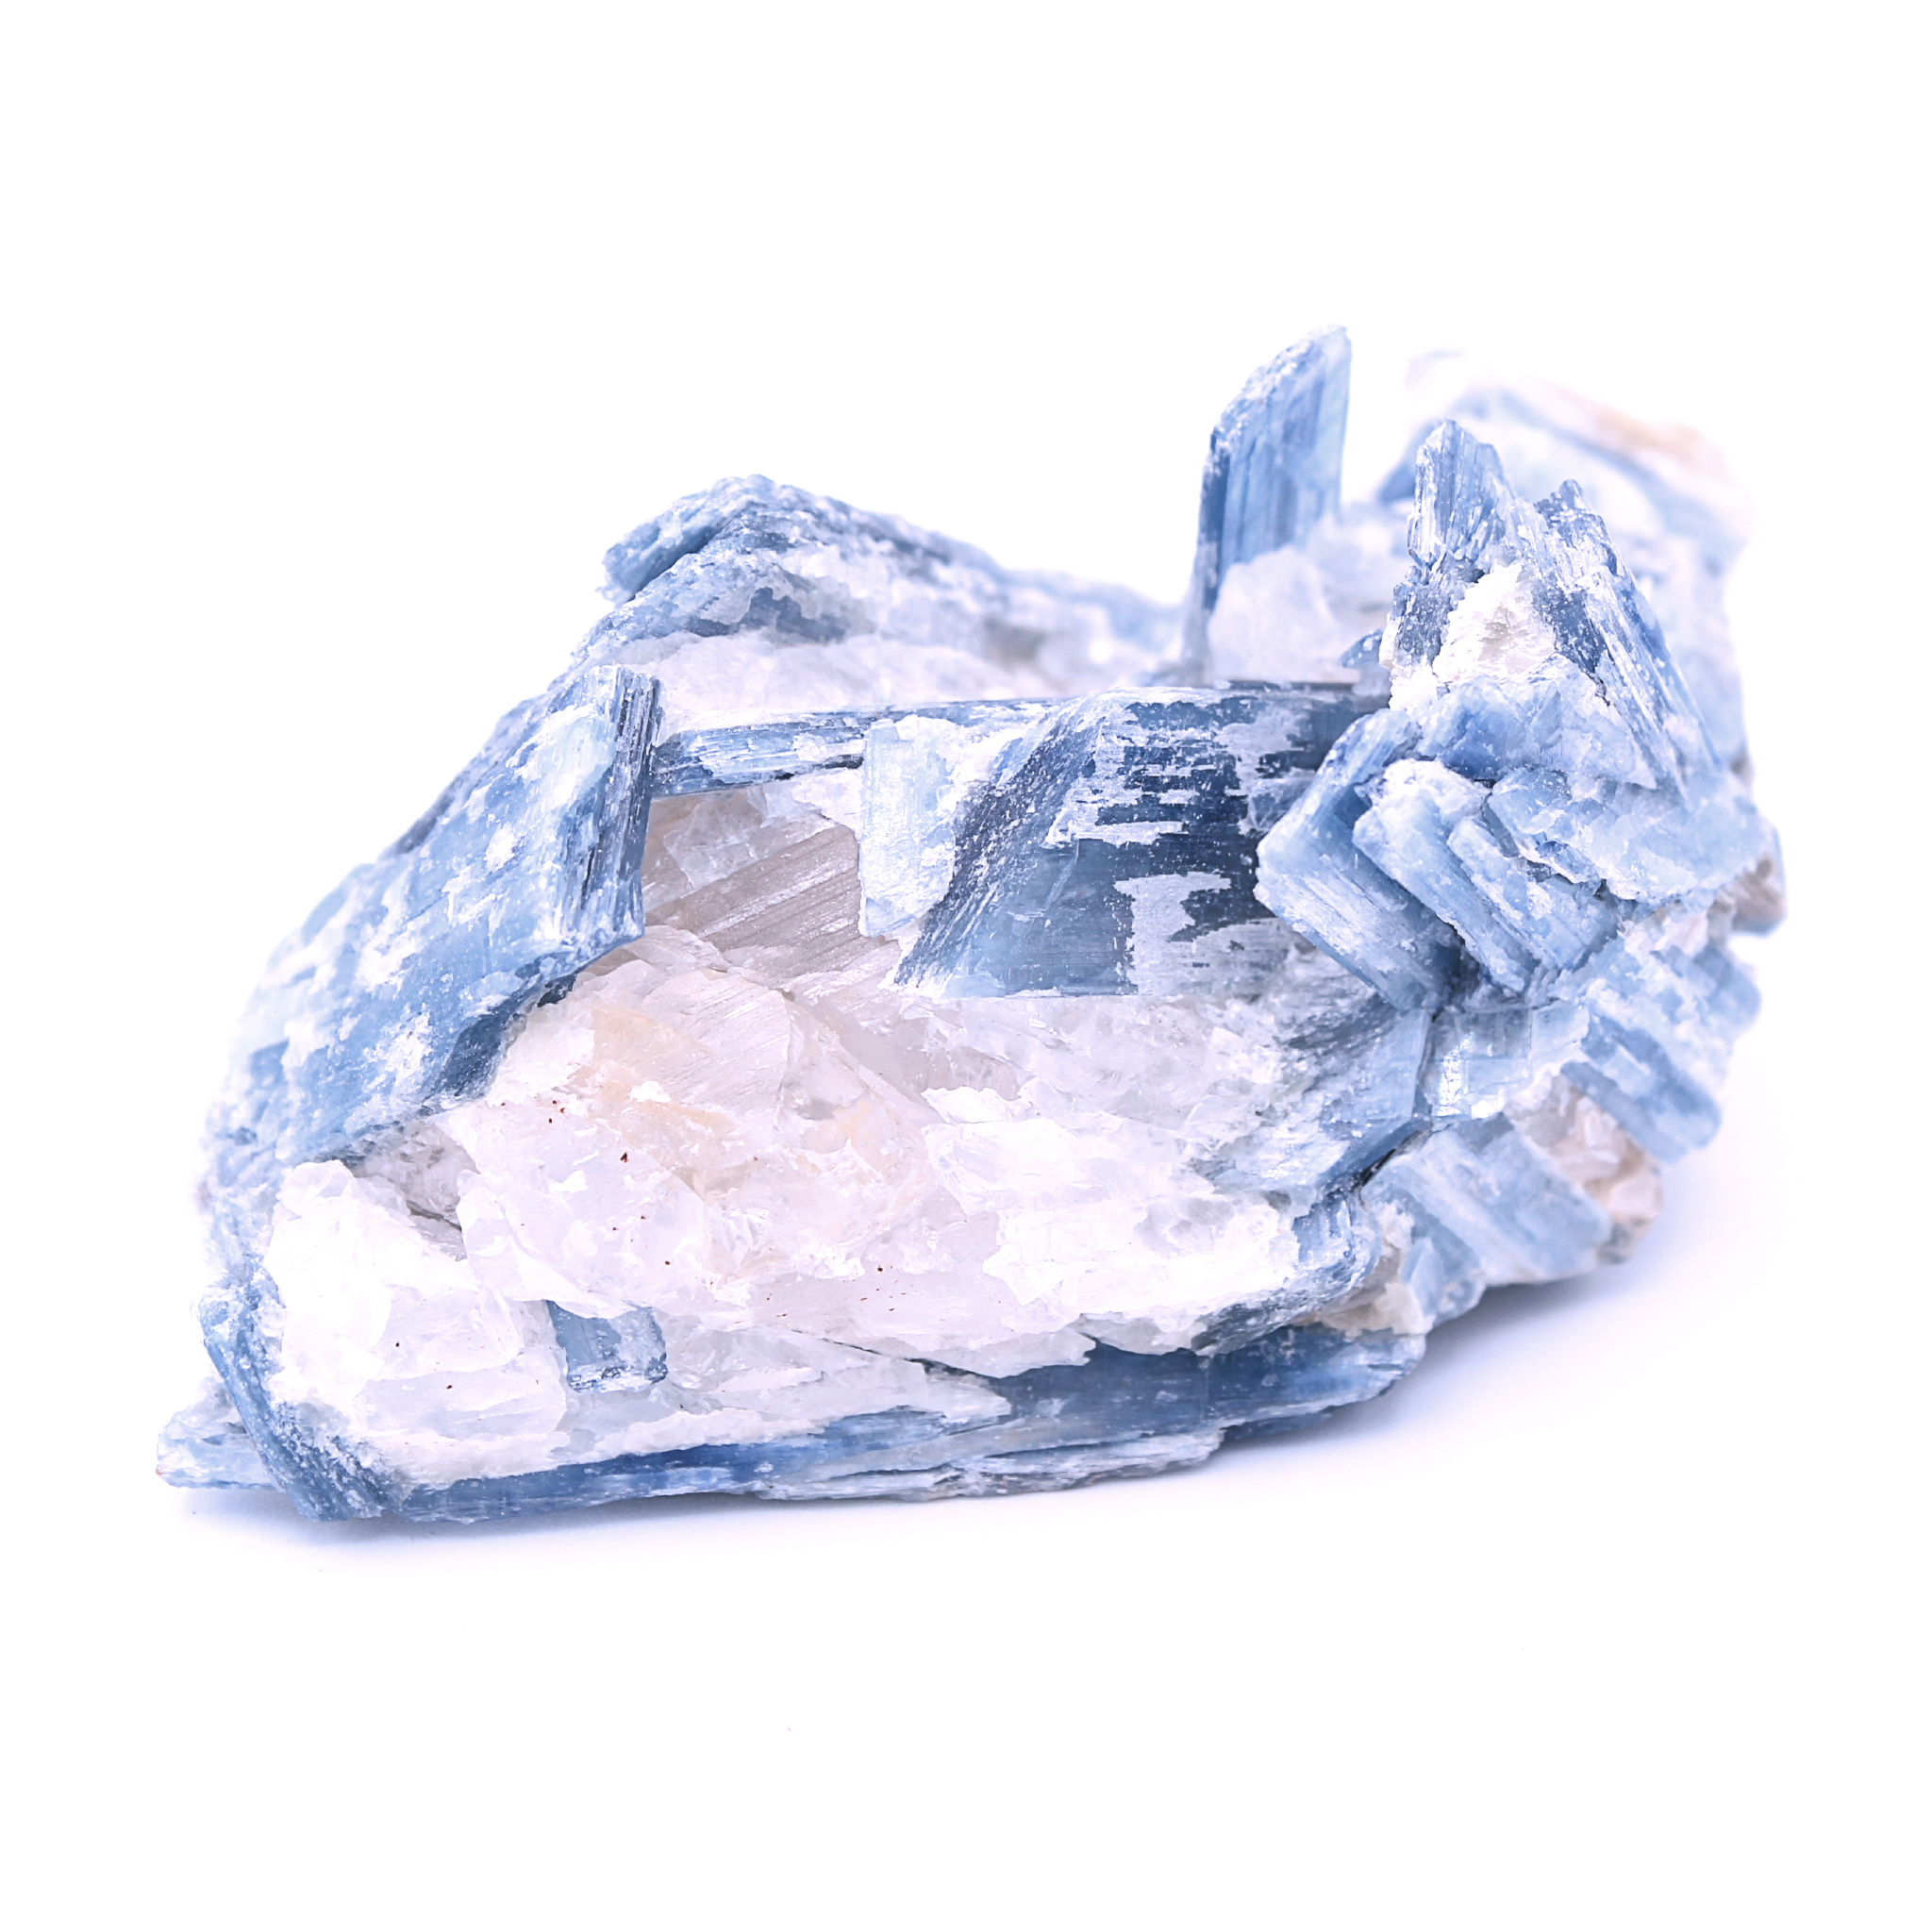 PIERRETOILES Disthène (Cyanite) 180 g Brésil -Piece Unique de Collection